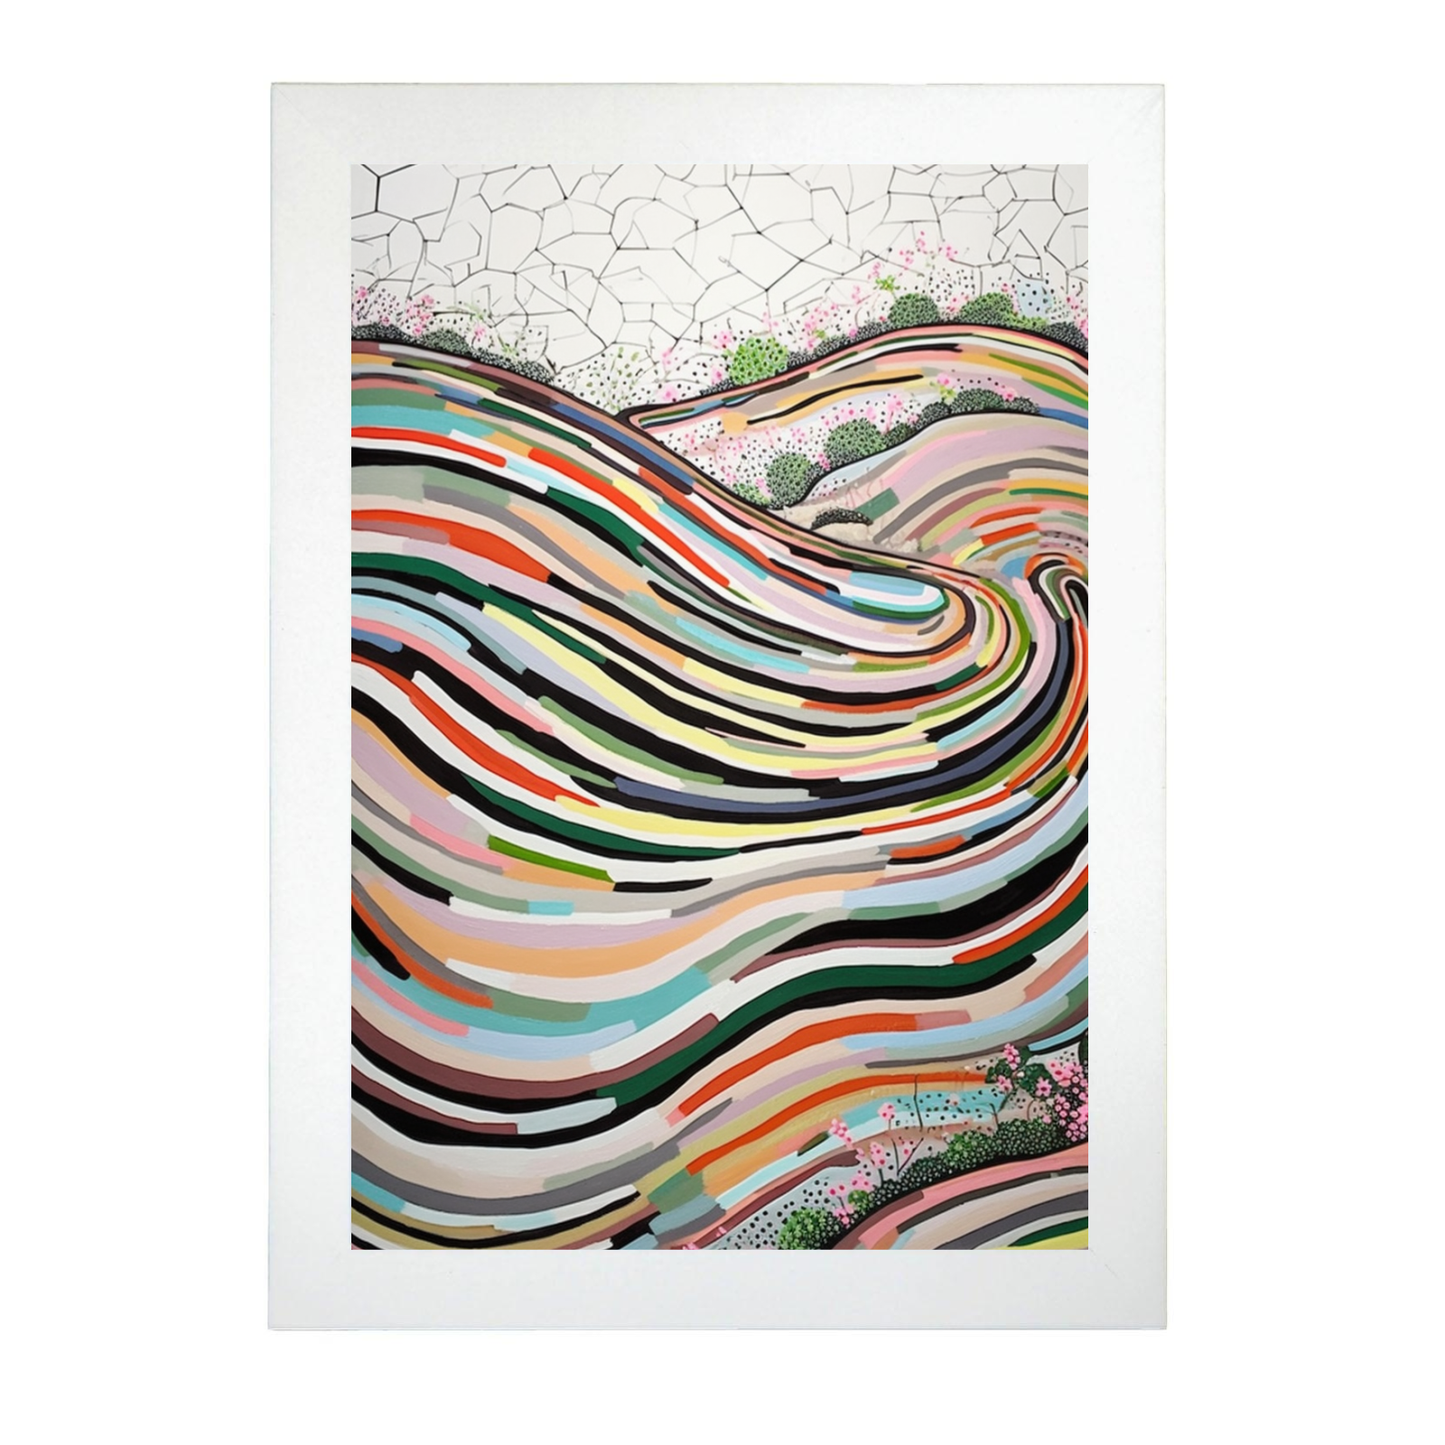 Póster de pintura abstracta con líneas curvas creada por Wu Guanzho